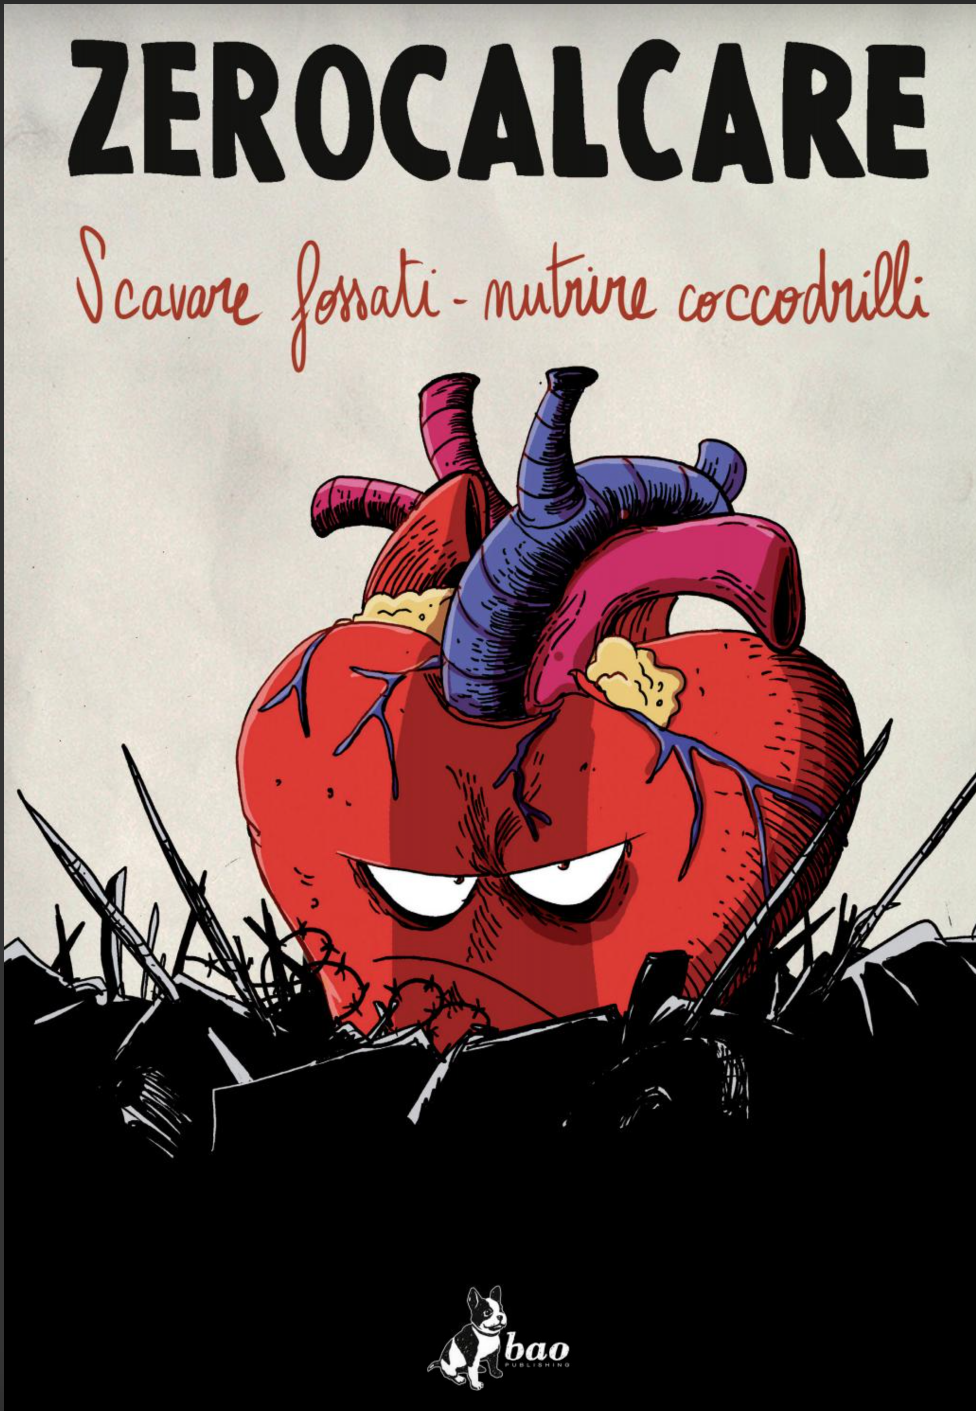 Il poster di Scavare fossati - nutrire coccodrilli, la prima esposizione dedicata a Zerocalcare